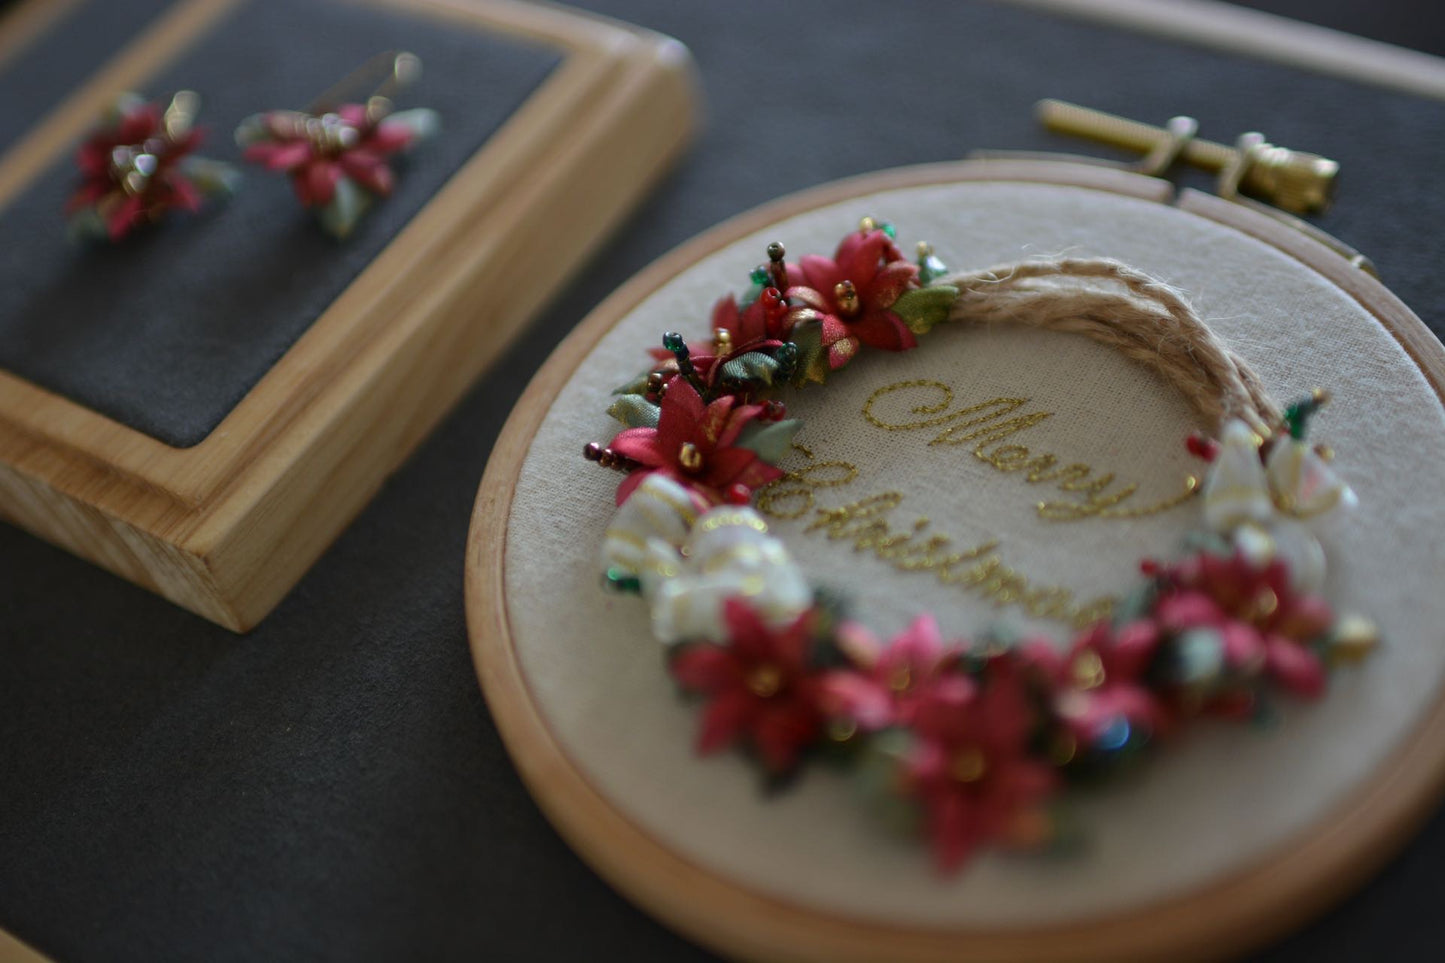 Flower Wreath Decoration & Earrings